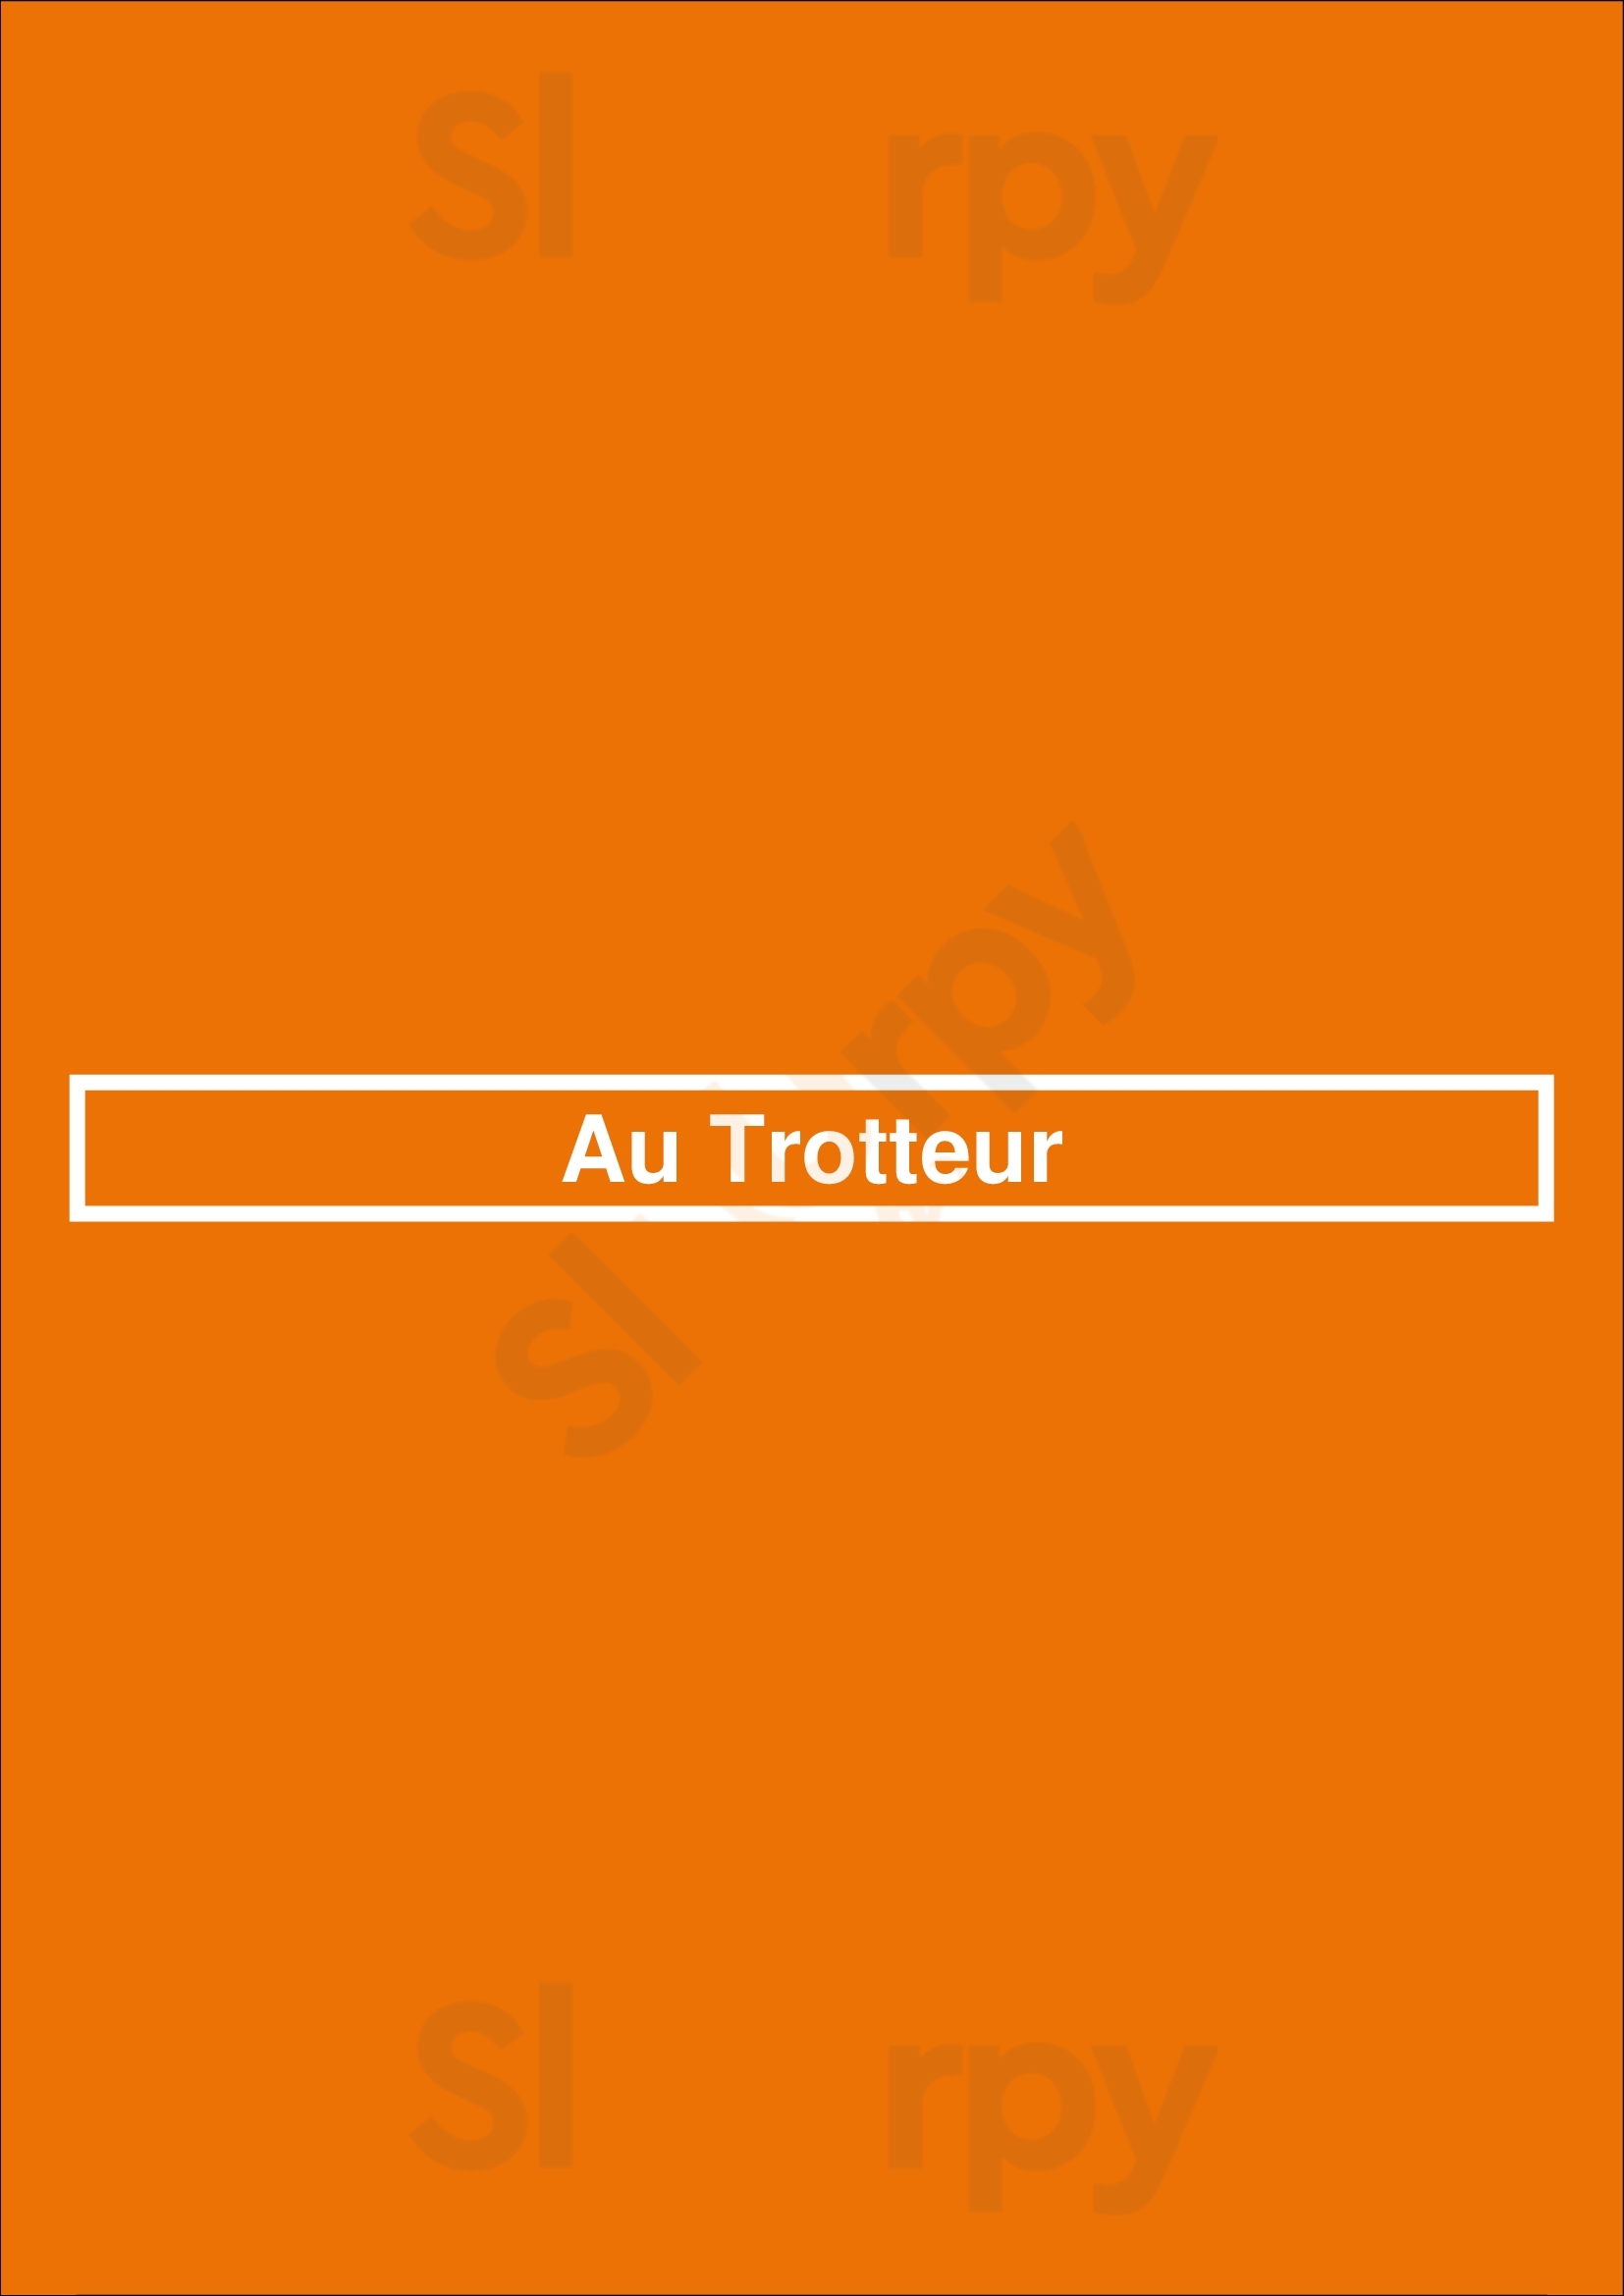 Au Trotteur Paris Menu - 1